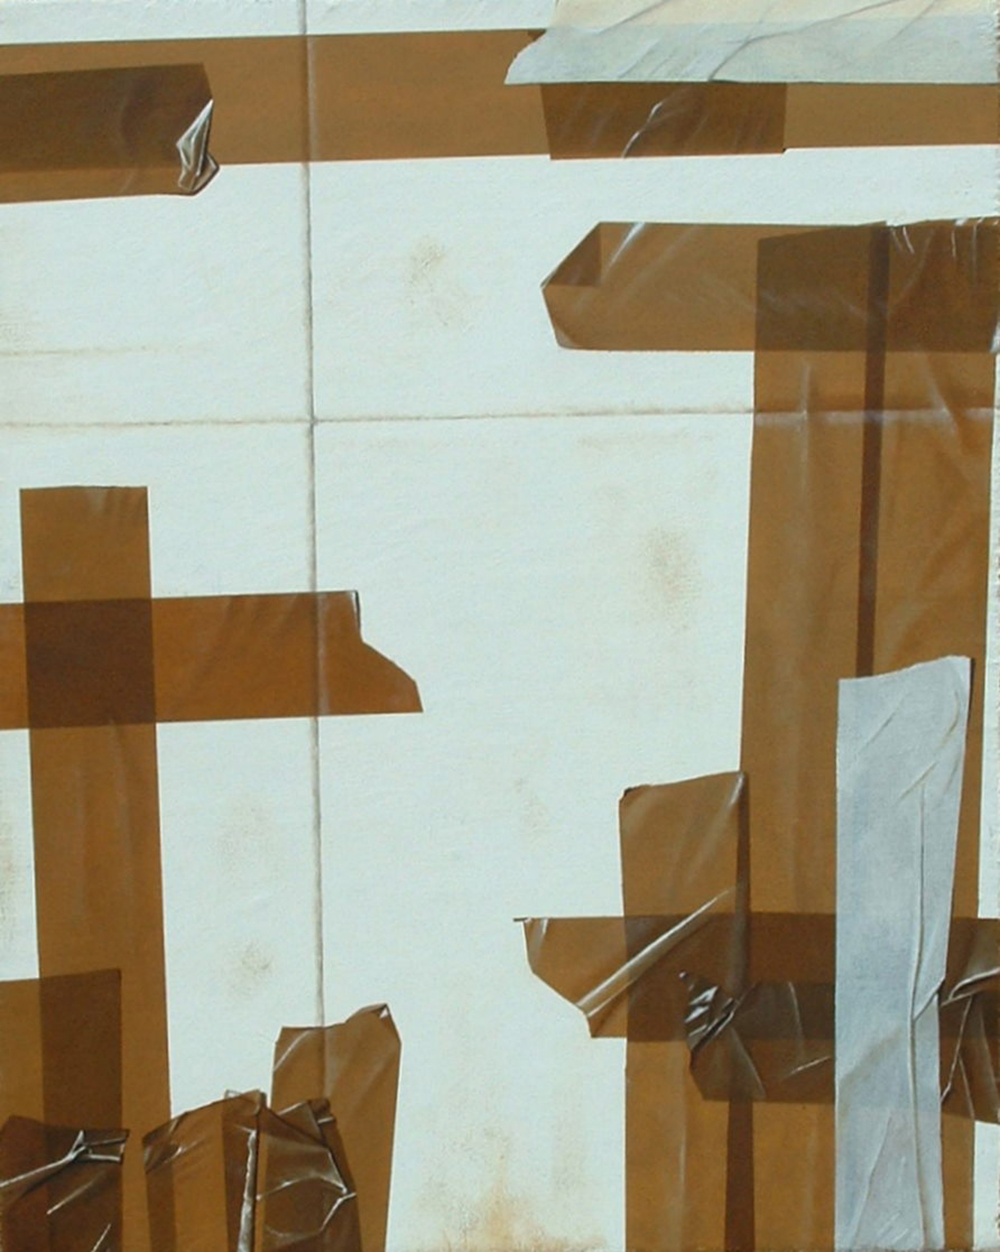 Box, 2012, Olio su tela, 40 x 50 cm